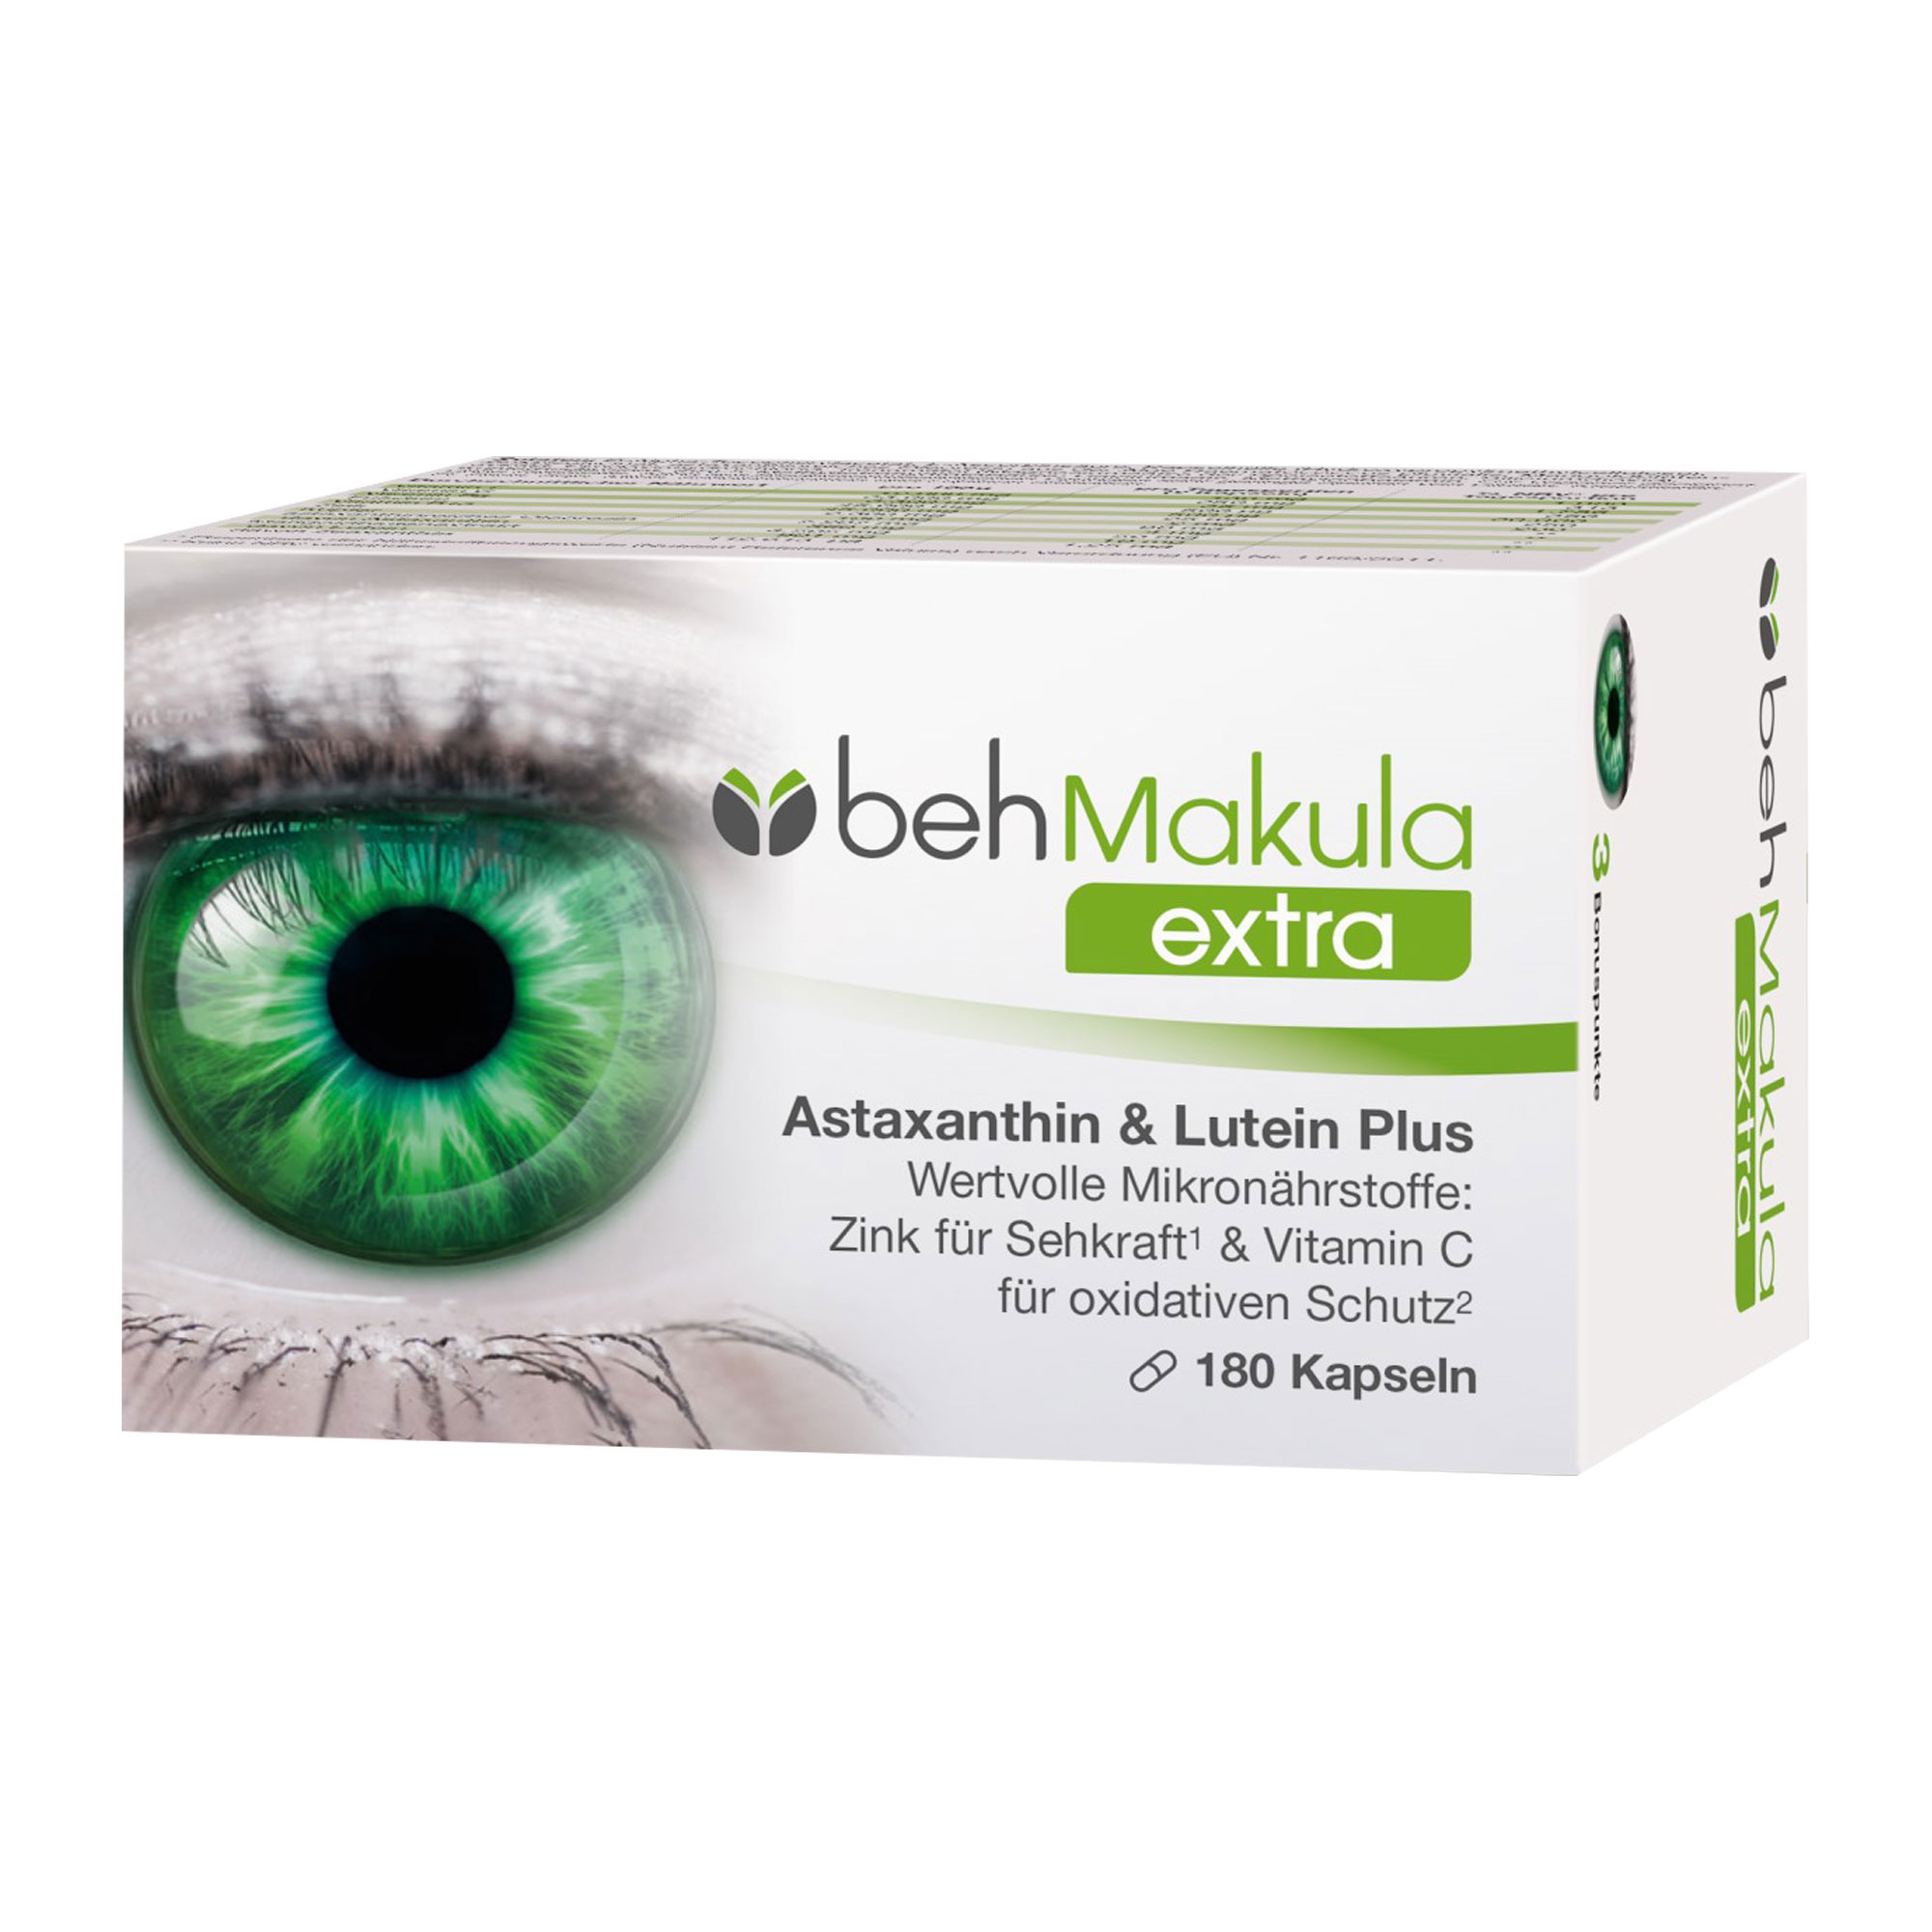 Nahrungsergänzungsmittel mit Vitaminen und Mineralstoffen, Lutein, Astaxanthin & Zeaxanthin. Für den Erhalt einer gesunden Augenfunktion und Sehkraft.